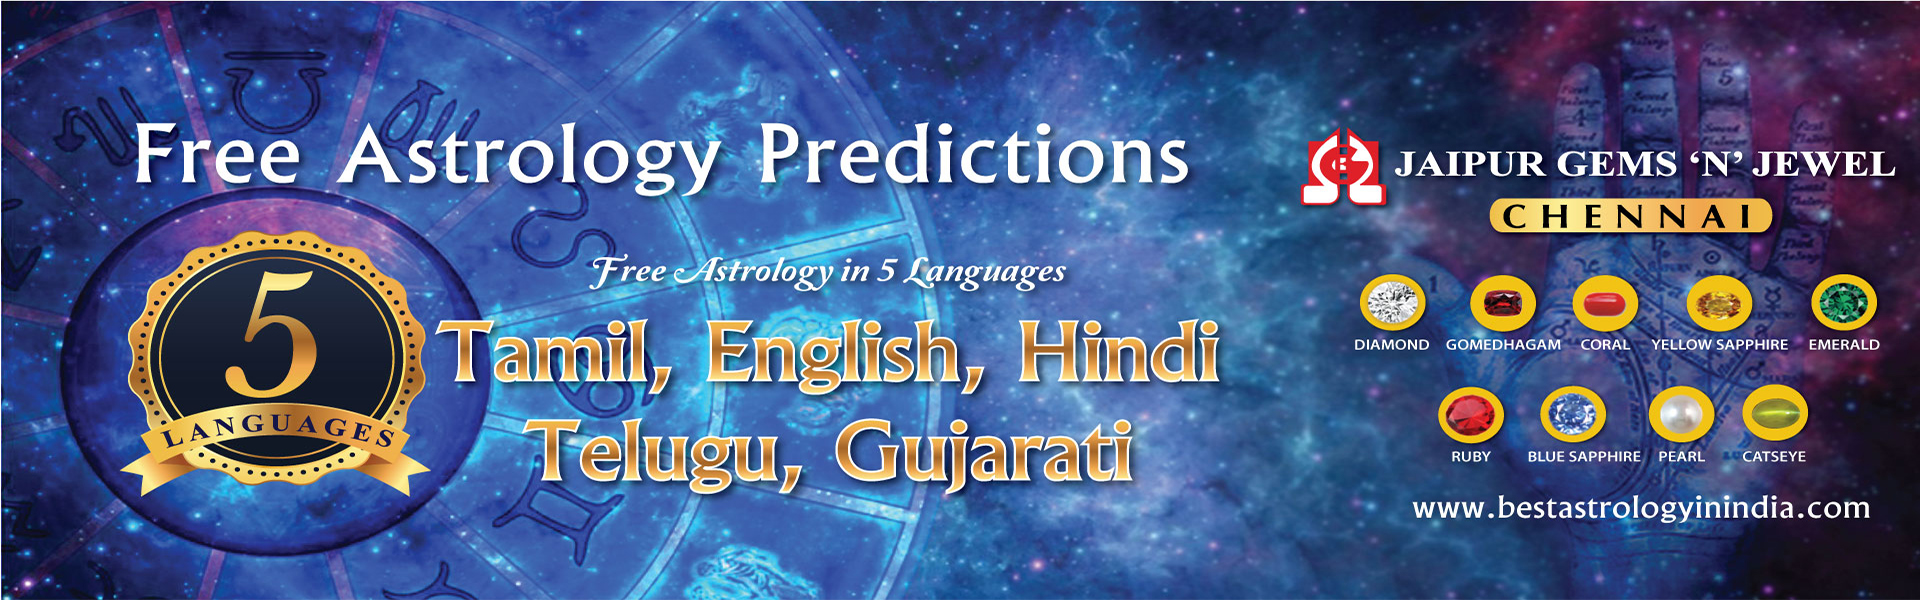 Best Astrology in Chennai